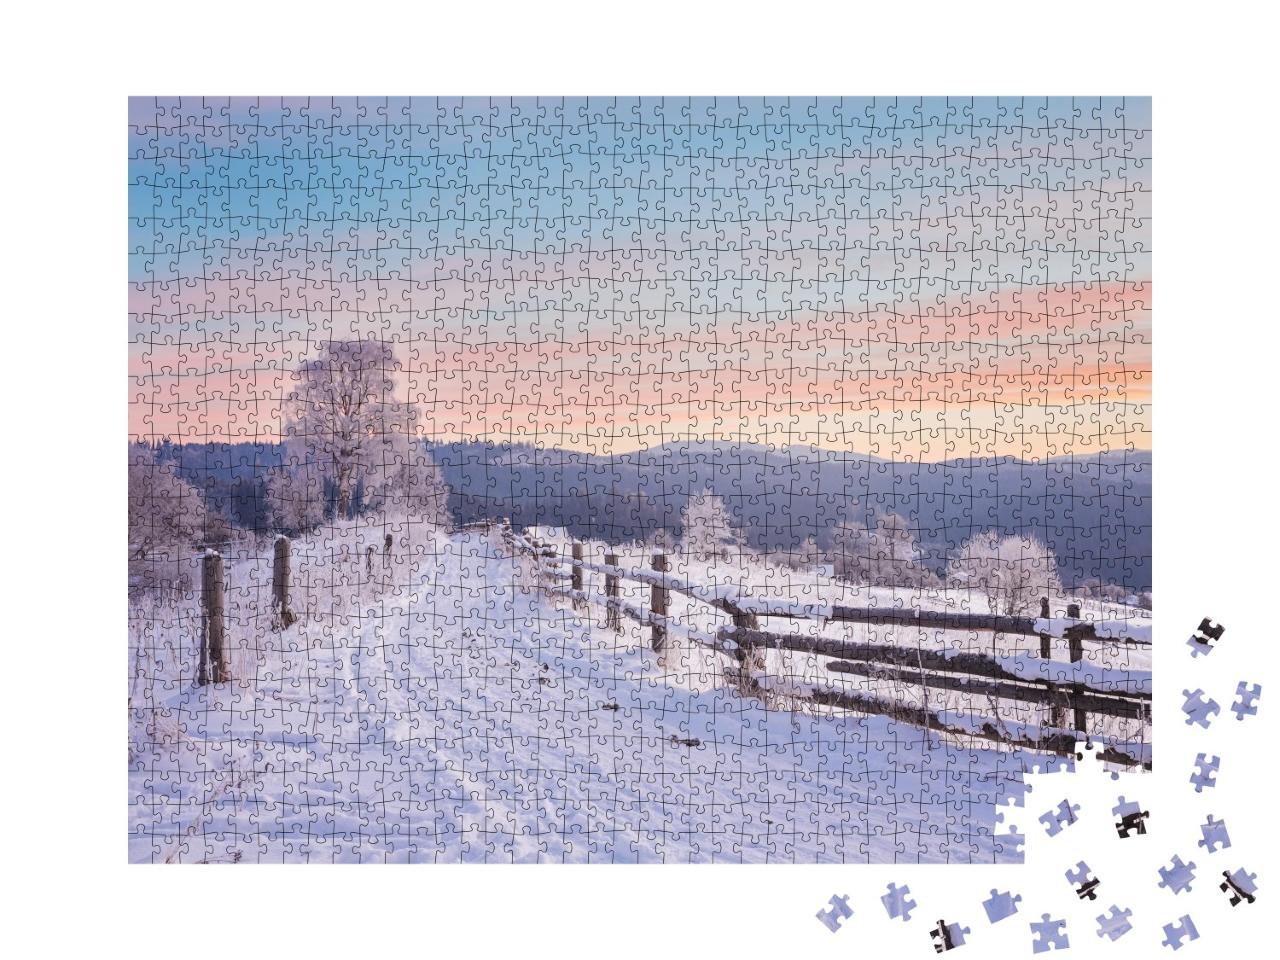 Puzzle de 1000 pièces « Fantastique paysage hivernal en soirée »